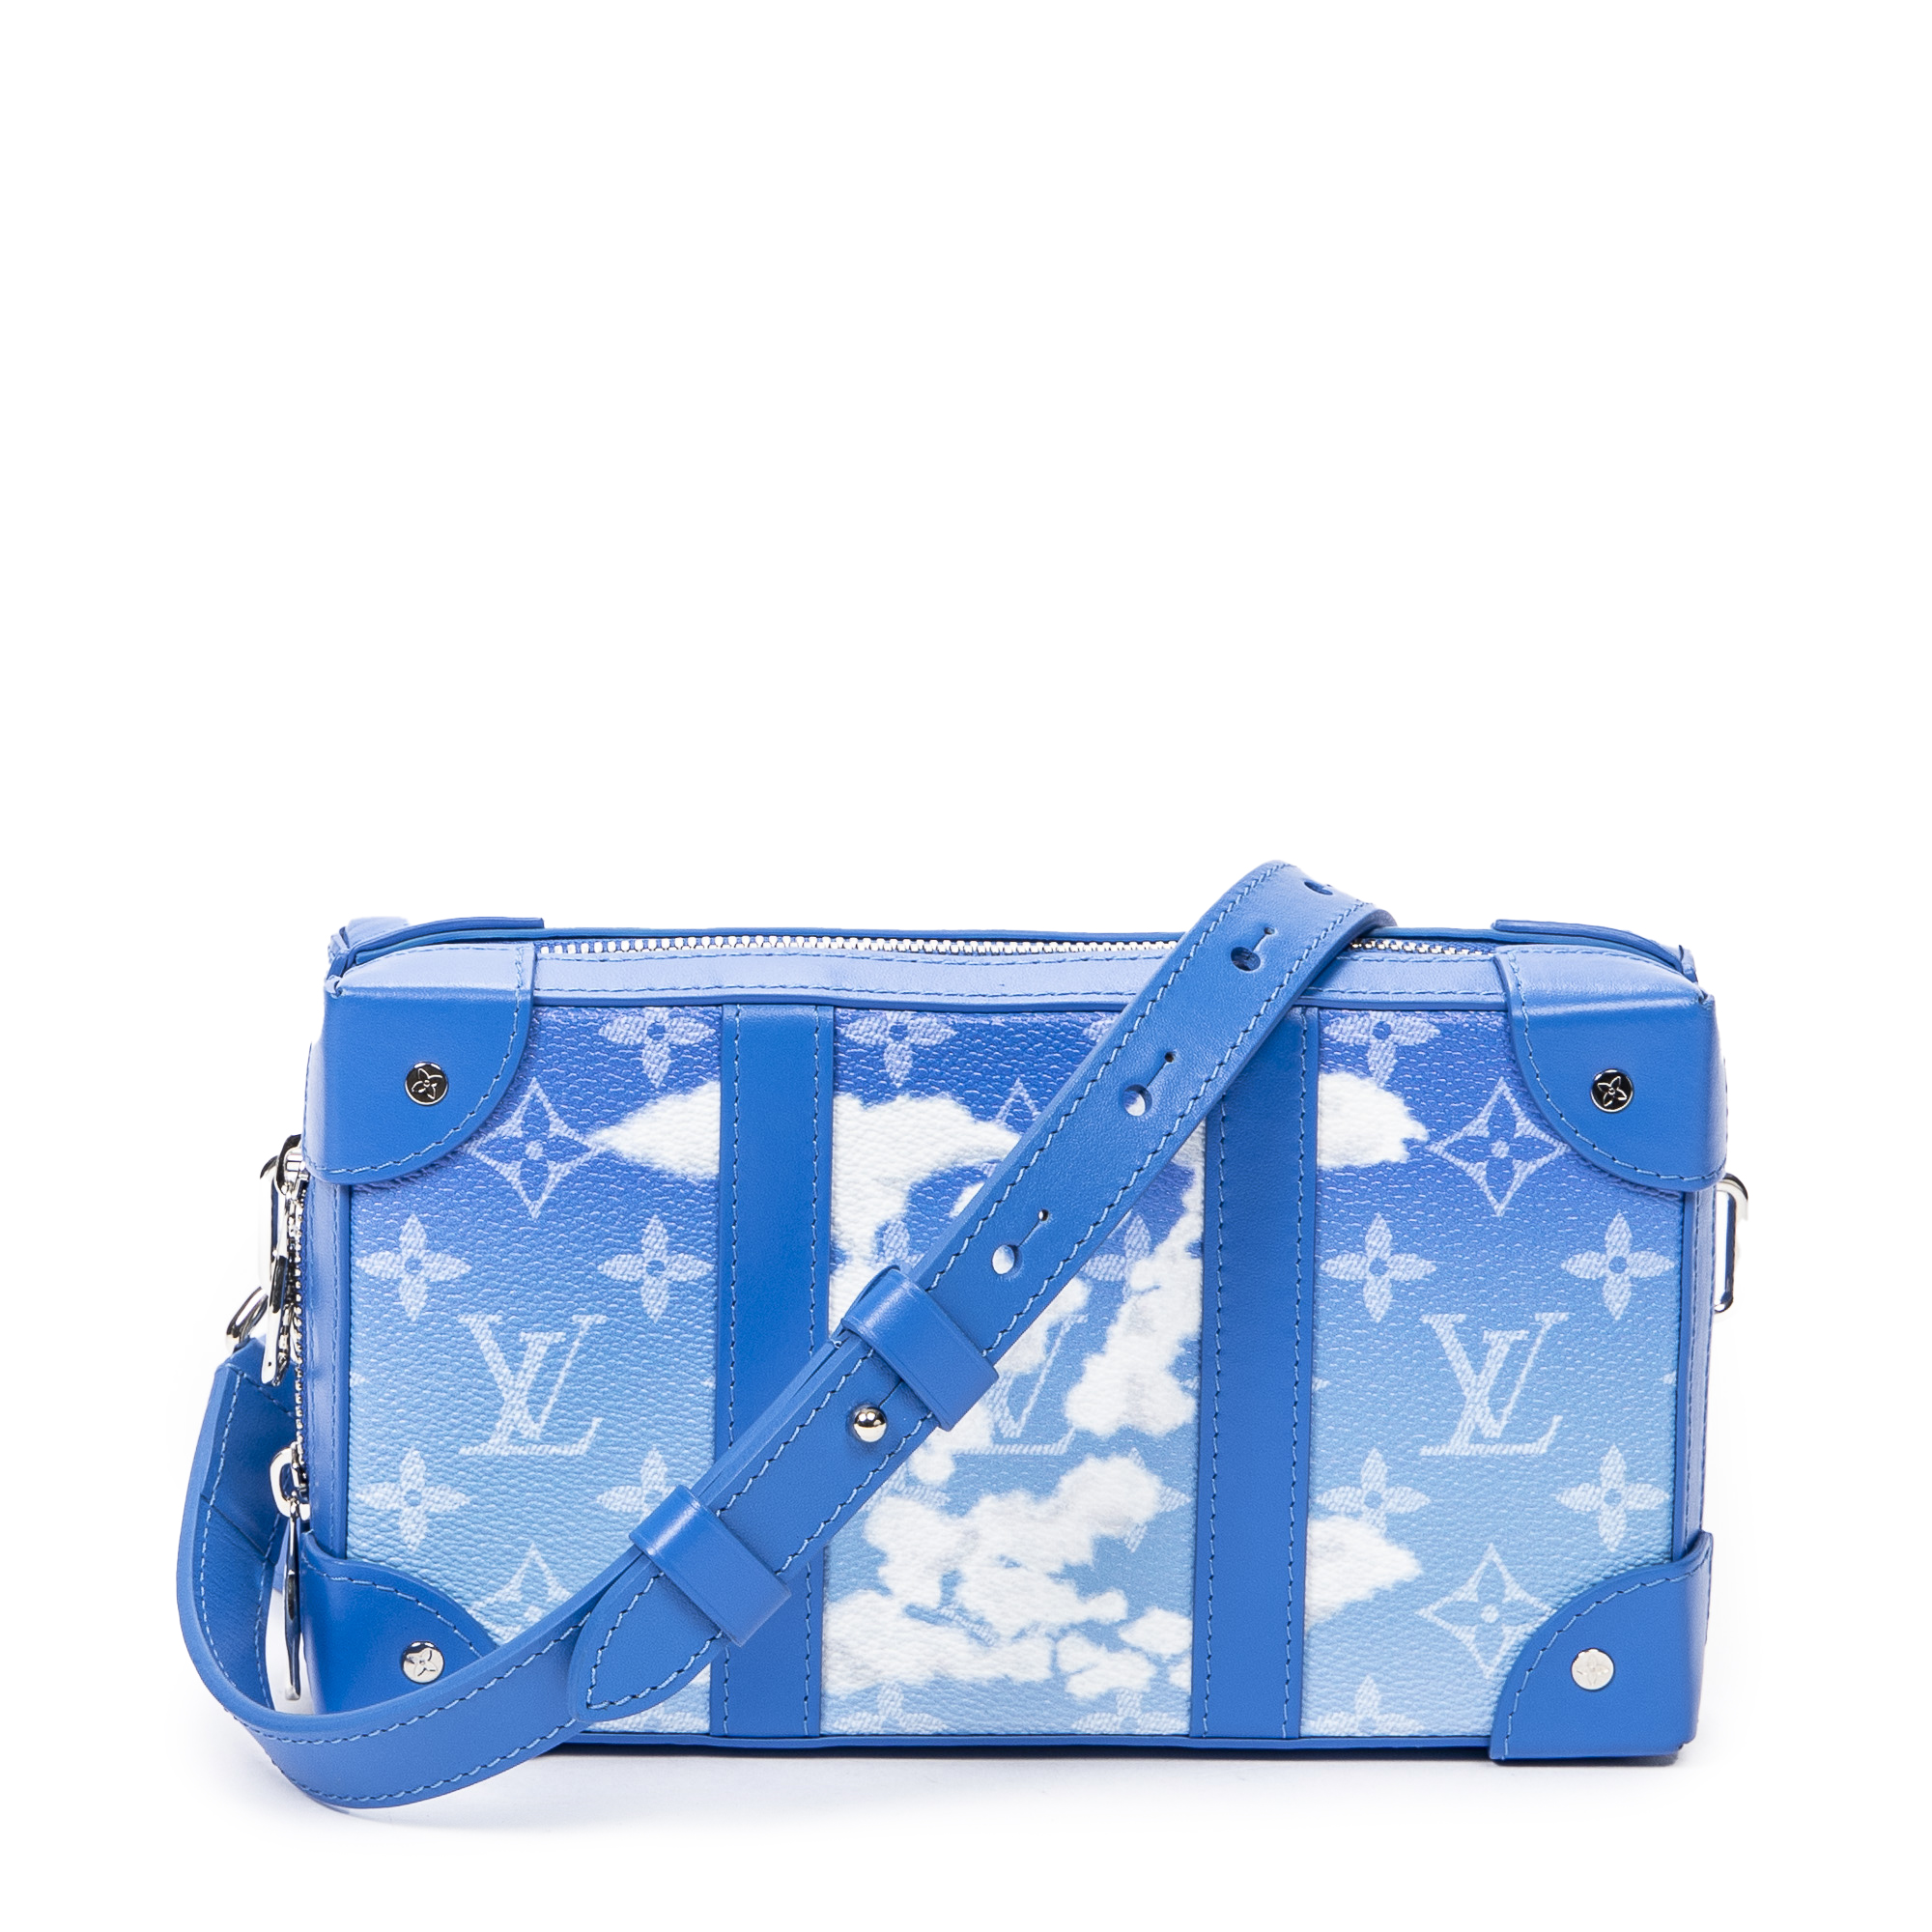 Louis Vuitton Soft Trunk Bag New Colors Release